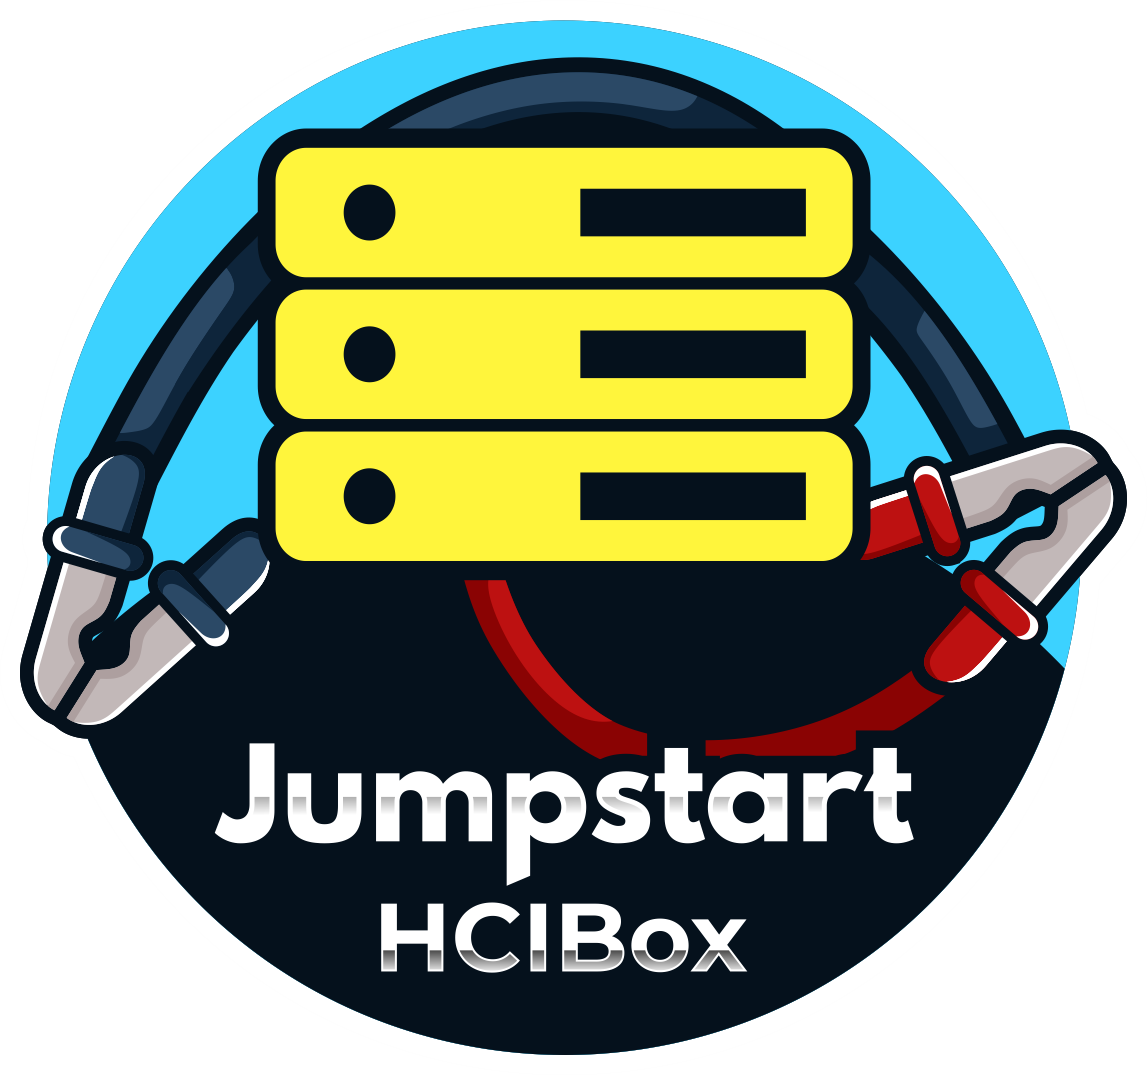 Announcing Jumpstart HCIBox